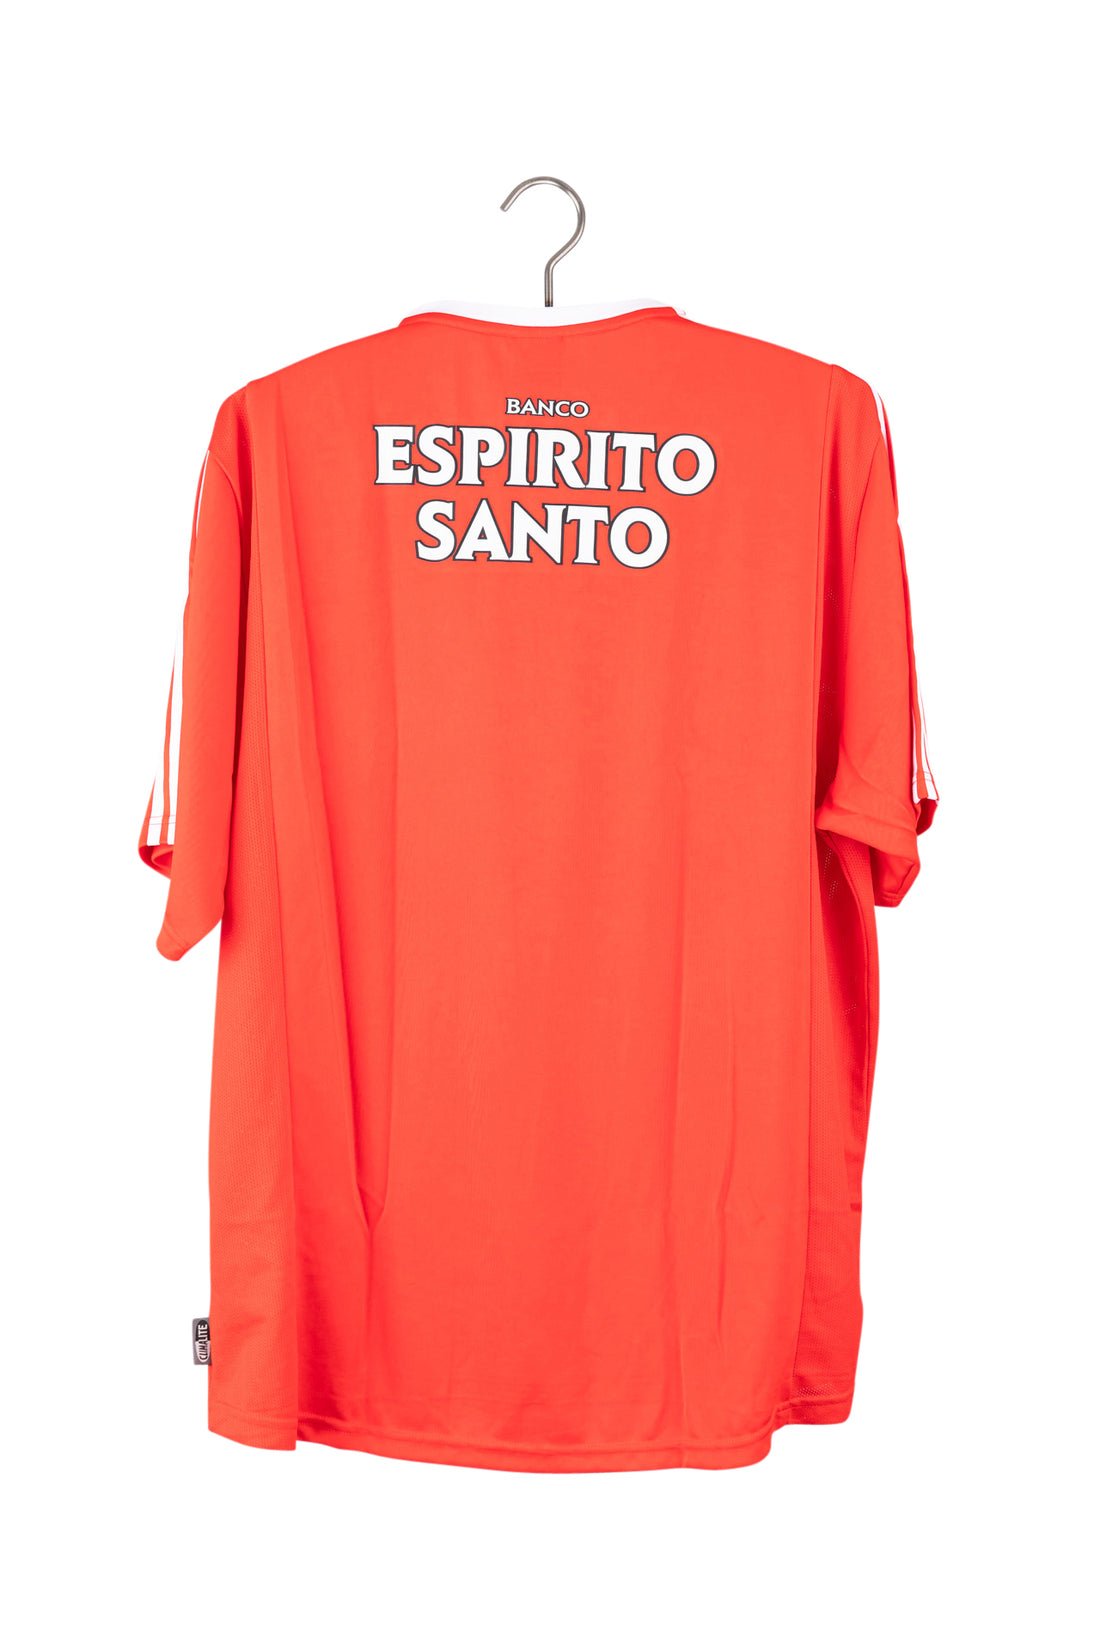 Benfica 2003 - 2004 Home Football Shirt